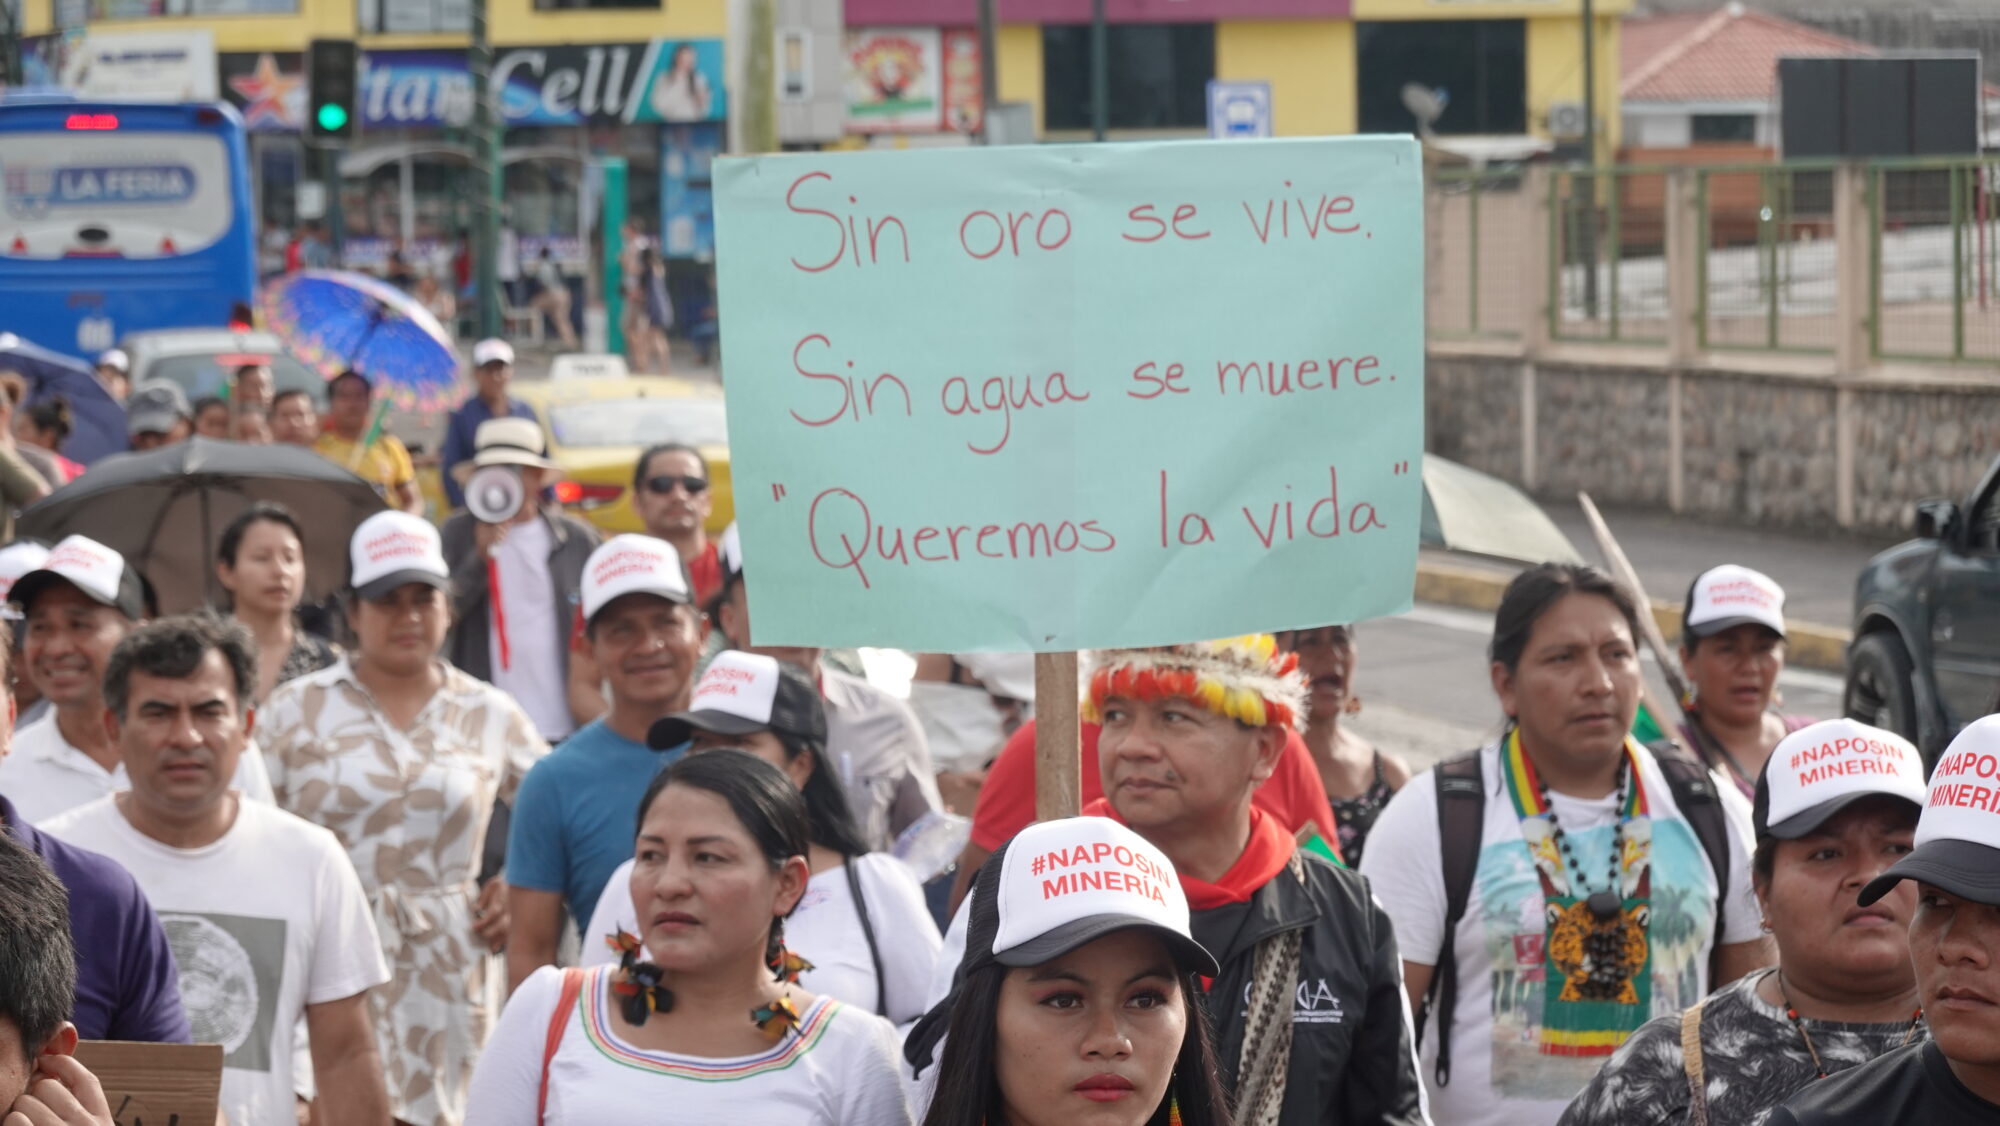 manifestantes en contra de la minería ilegal en Napo, Ecuador, con un cartel que dice "Sin oro se vive, sin agua se muere, queremos la vida"